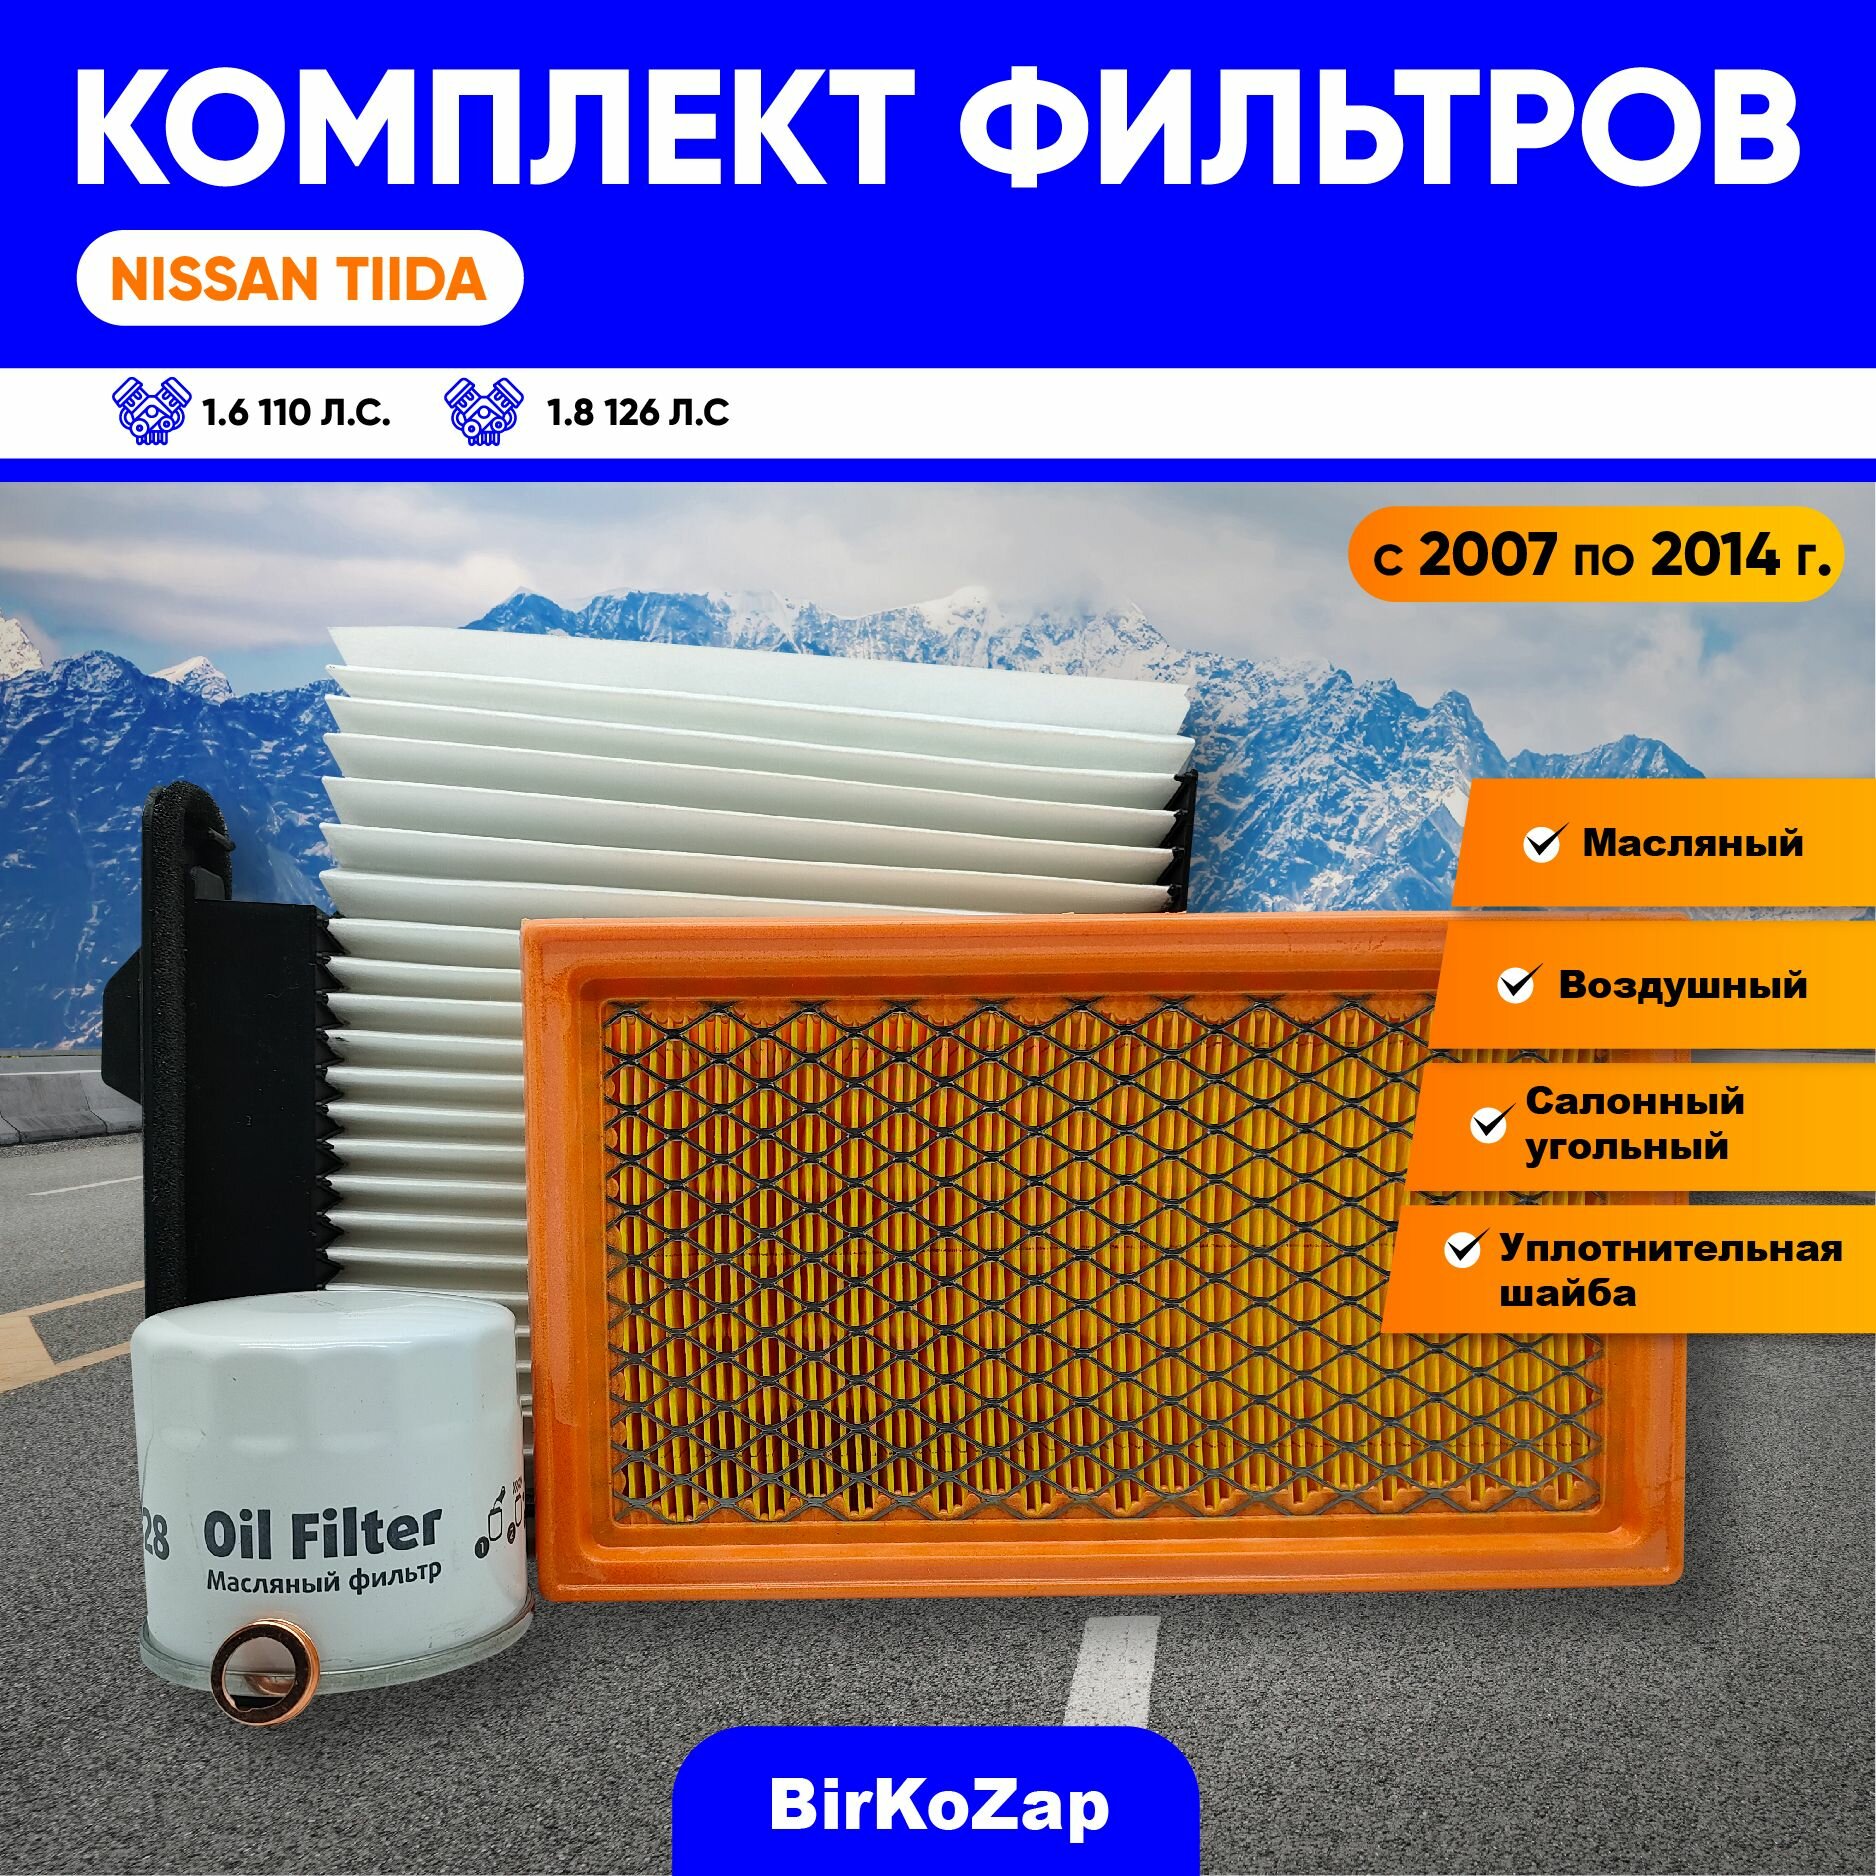 Комплект фильтров для ТО NISSAN TiiDA (фильтр масляный, воздушный, салонный+прокладка под сливную пробку)